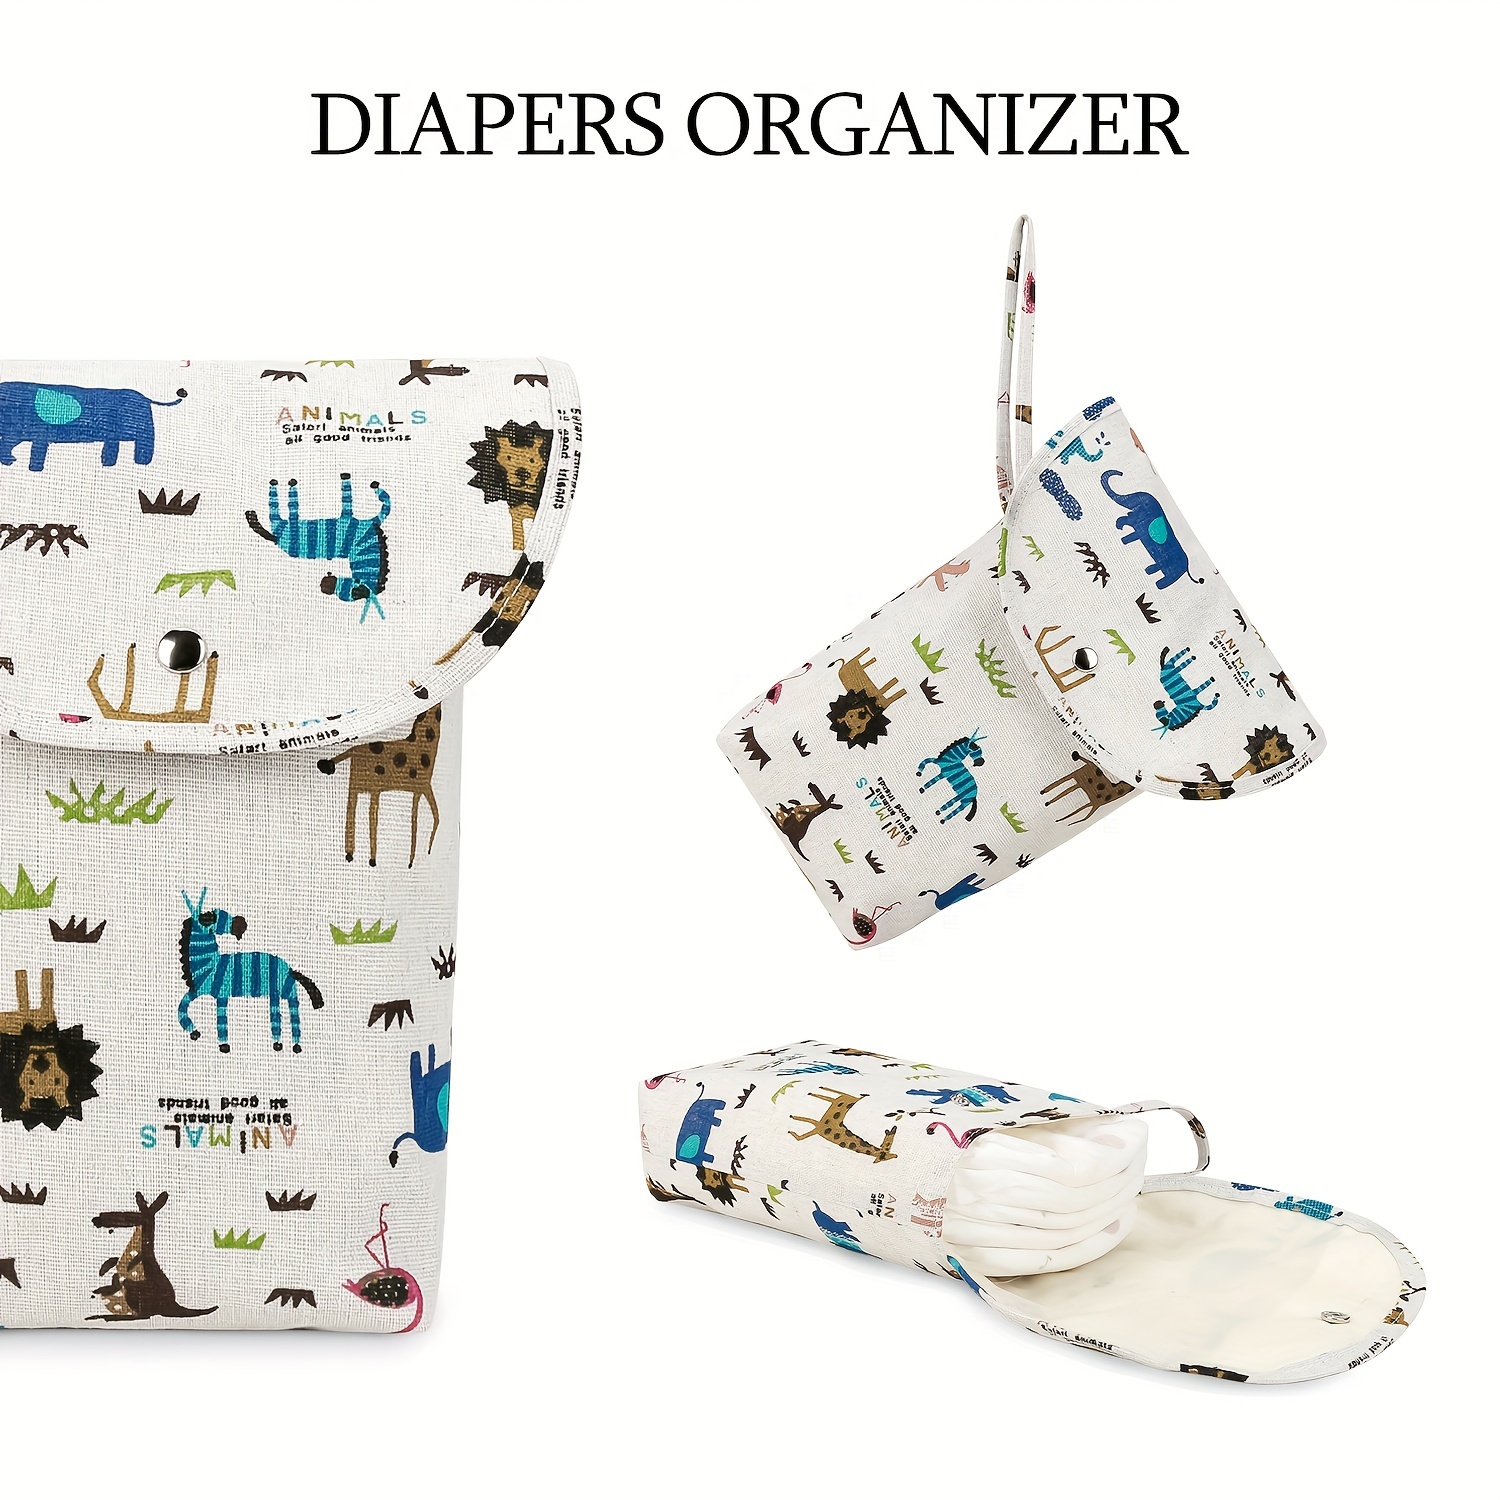 Bolsa de pañales para bebés de 11 estilos, apilador de pañales impermeable,  bolsas secas y húmedas de maternidad, accesorios para cochecito de